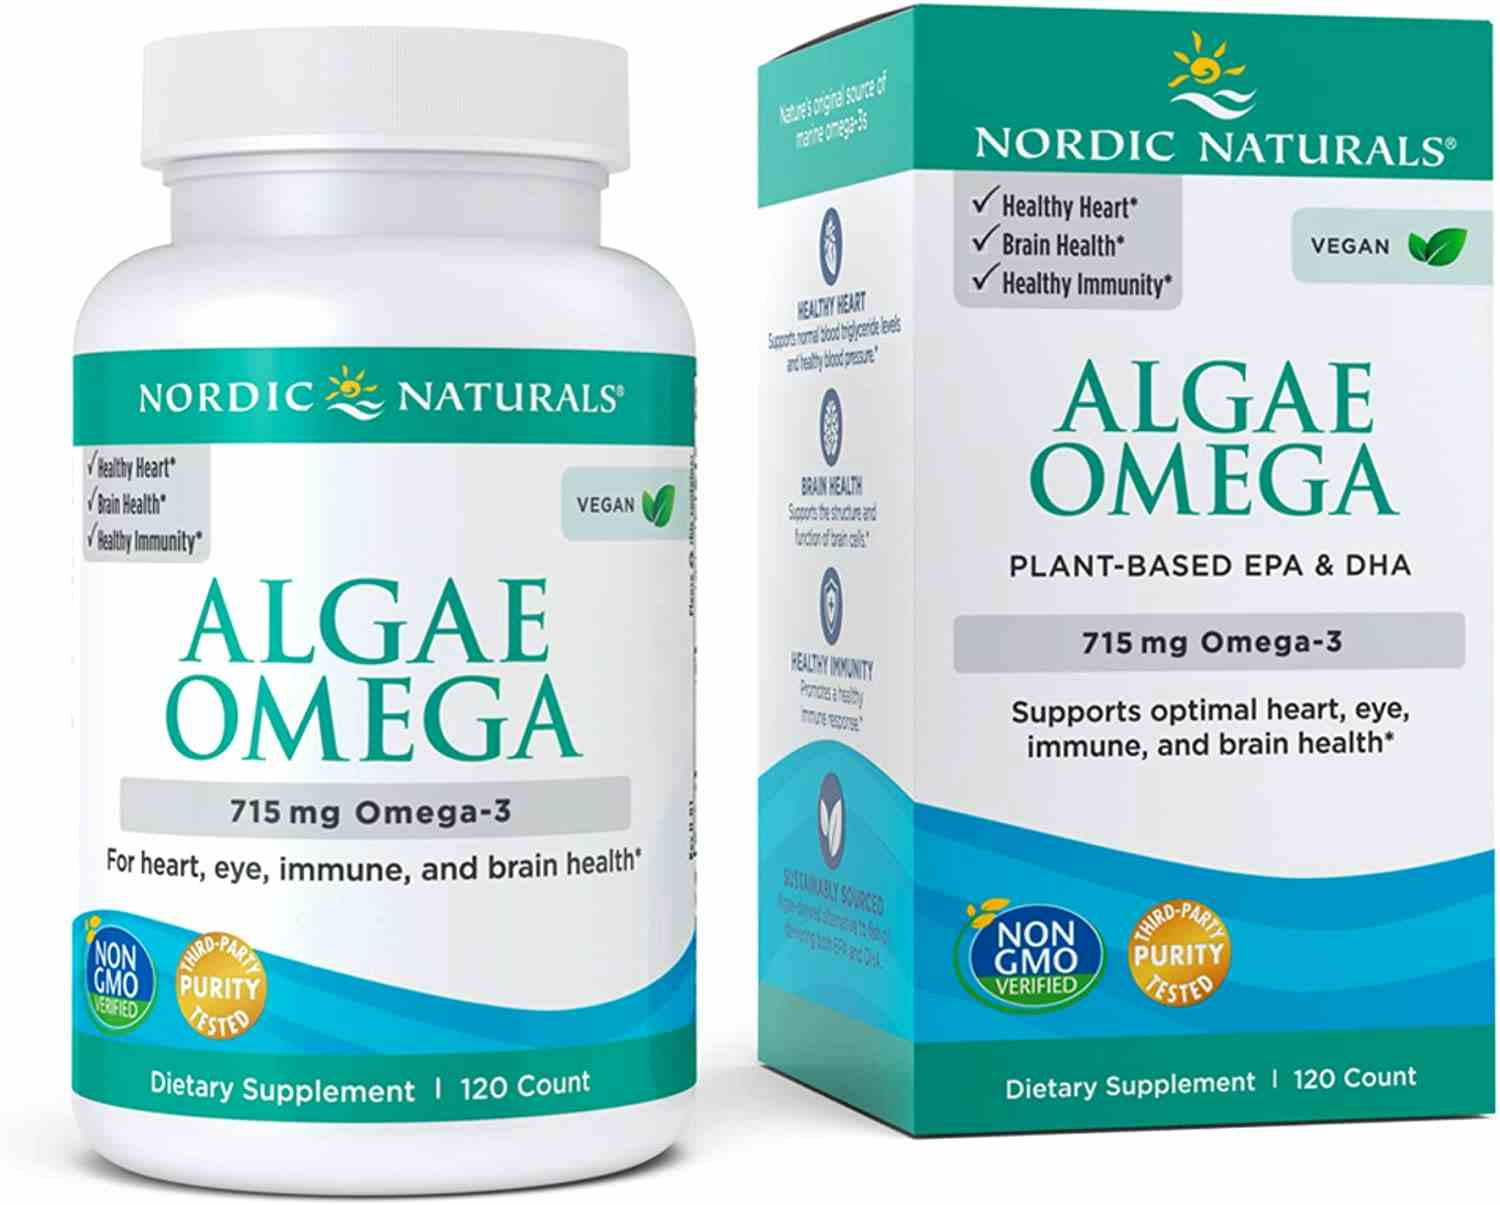 Nordic Naturals Algae Omega, 715 mg, 60 Soft Gels